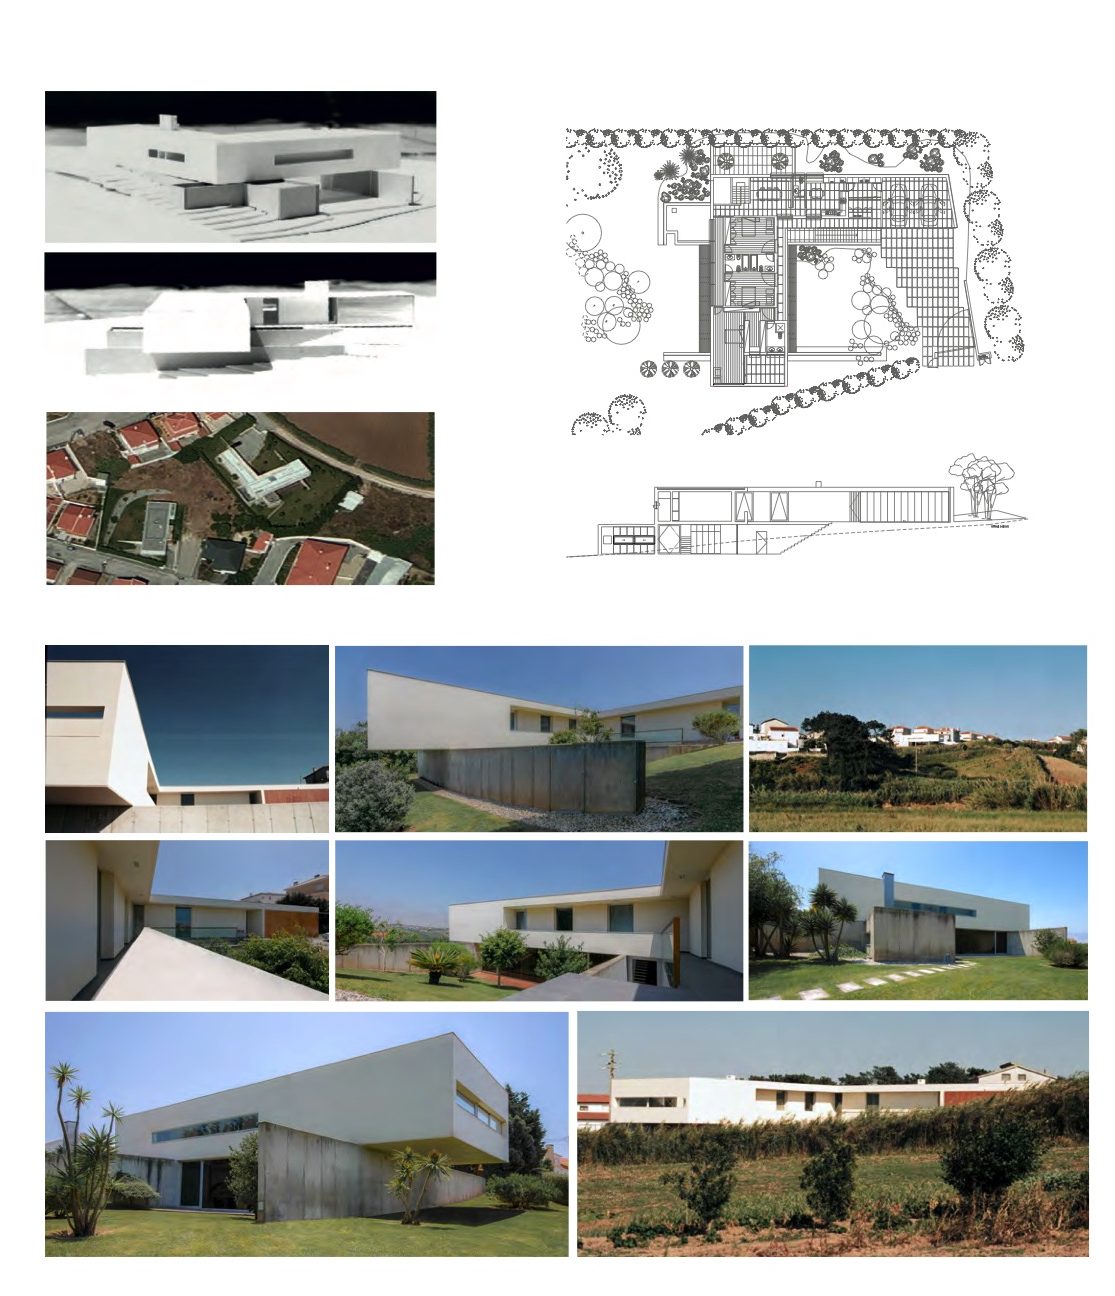 Moradia L. Garcia, Seixal Lourinhã - tipologia T4 e arranjos exteriores - 541 m2 de área bruta de construção em parcela de 2006 m2.